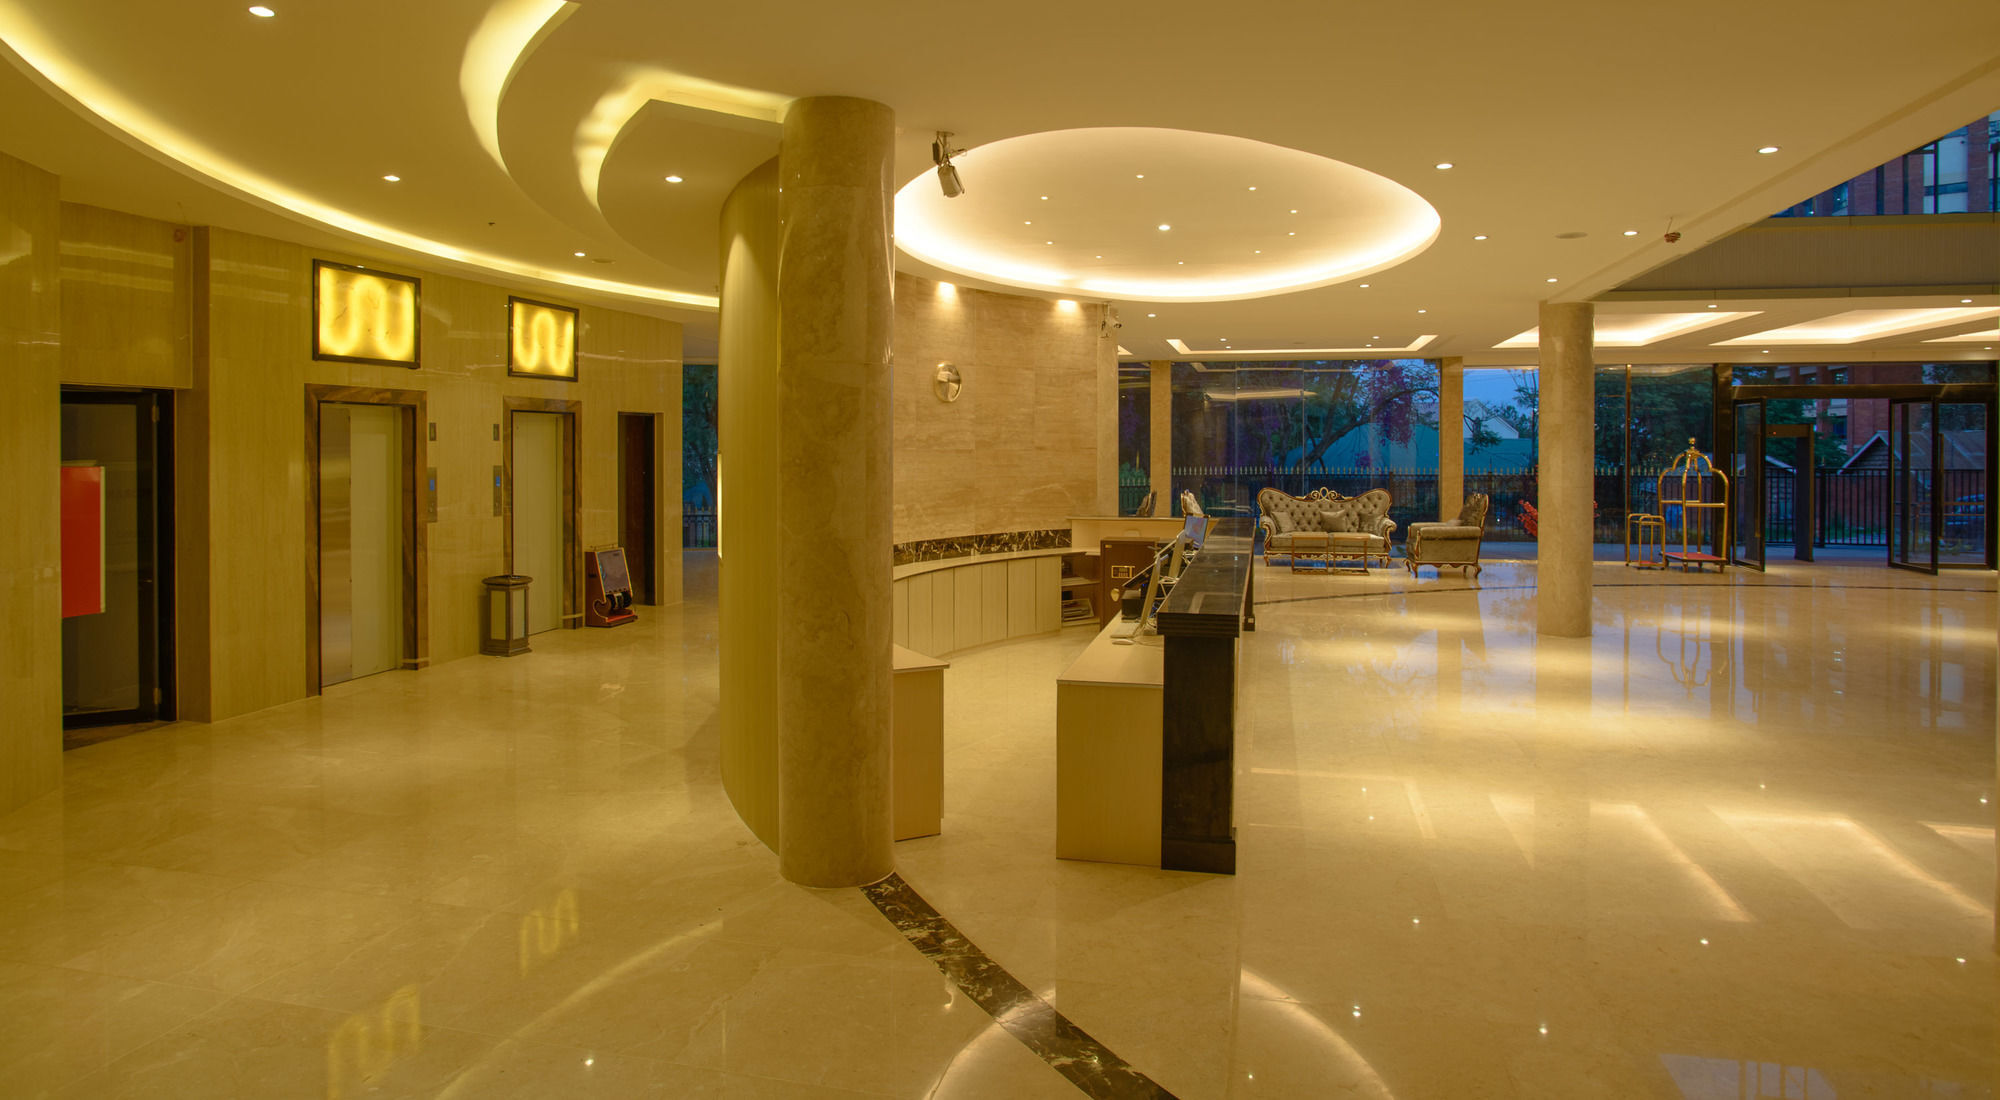 فندق Swiss International Lenana Mount نيروبي المظهر الخارجي الصورة